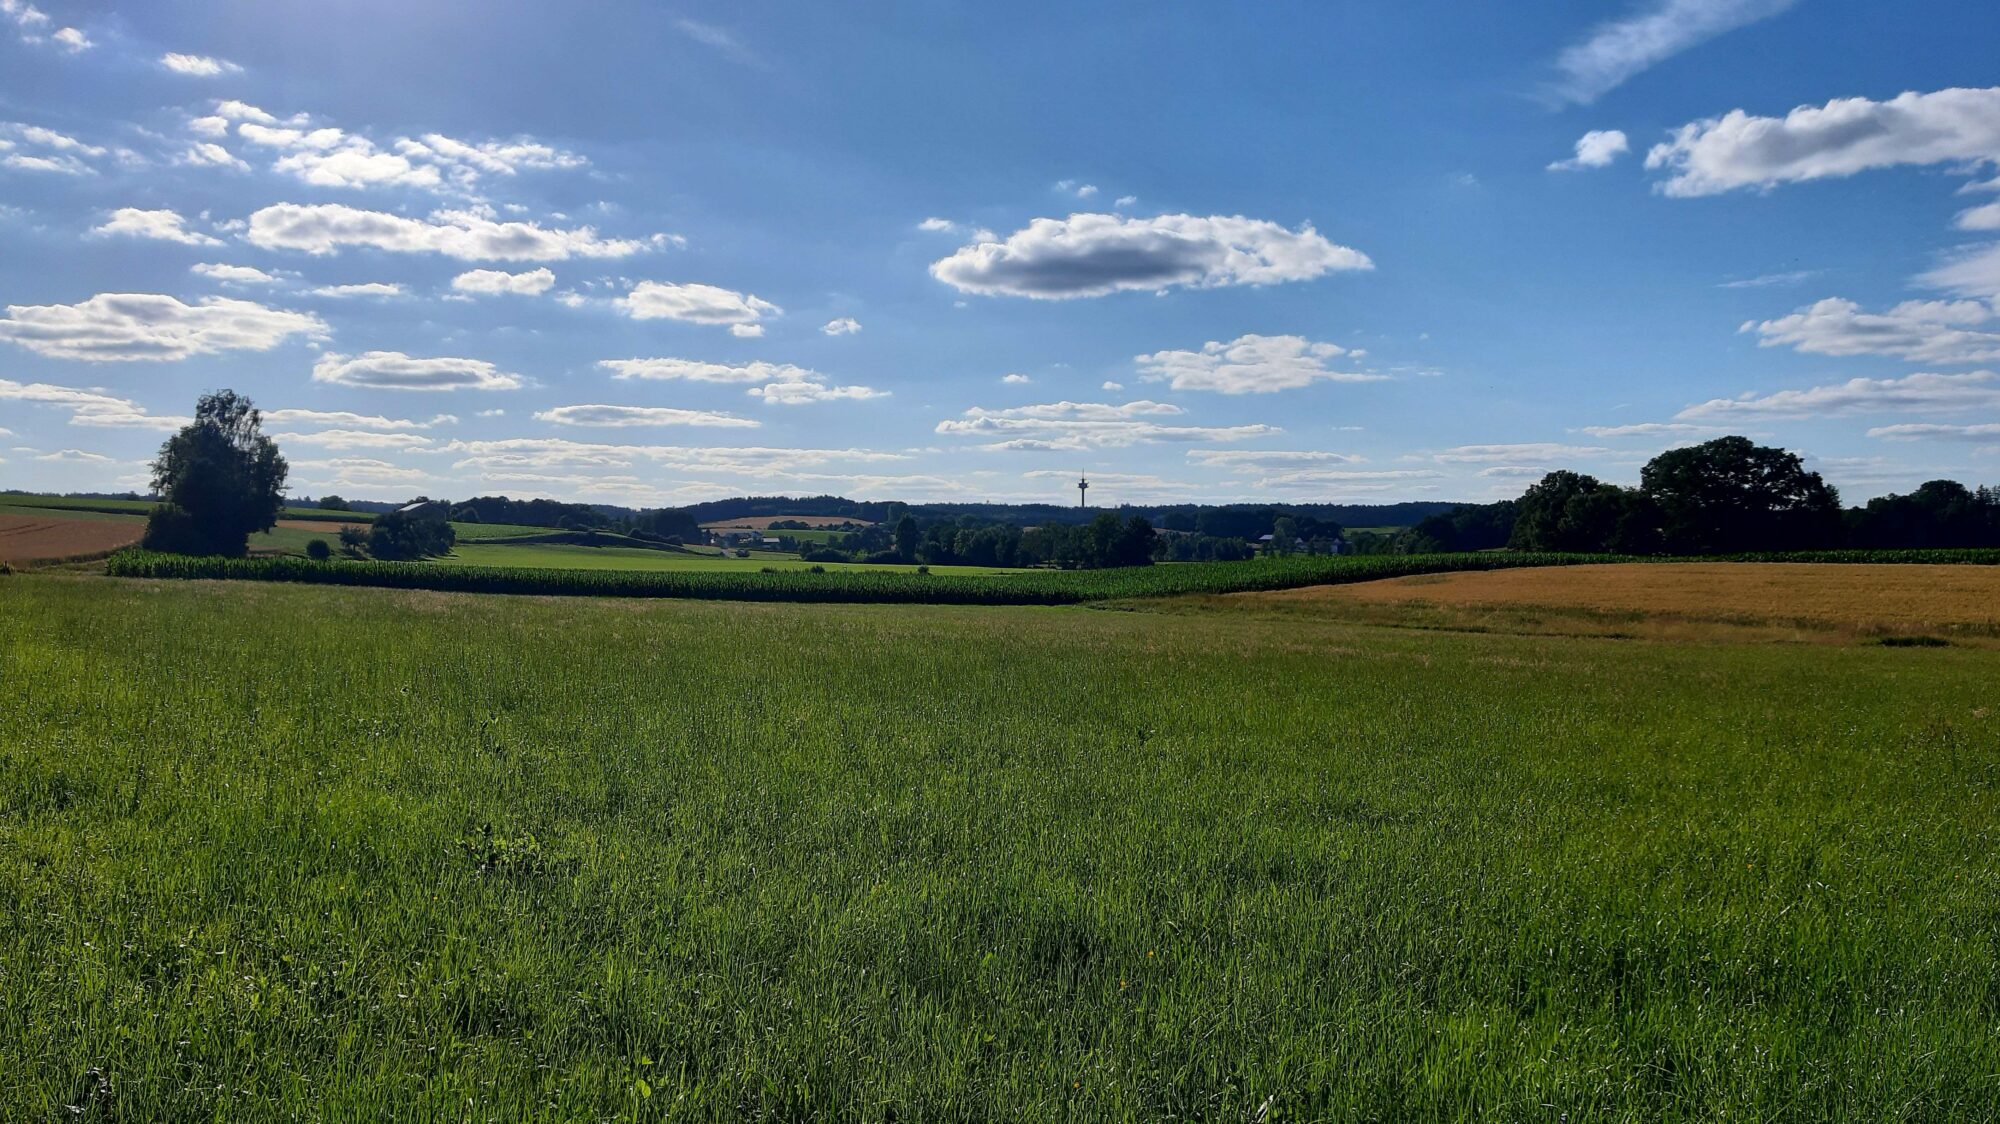 Ausblick in die Natur Richtung Schönbach. Man sieht Wiesen und Felder sowie blauen Himmel